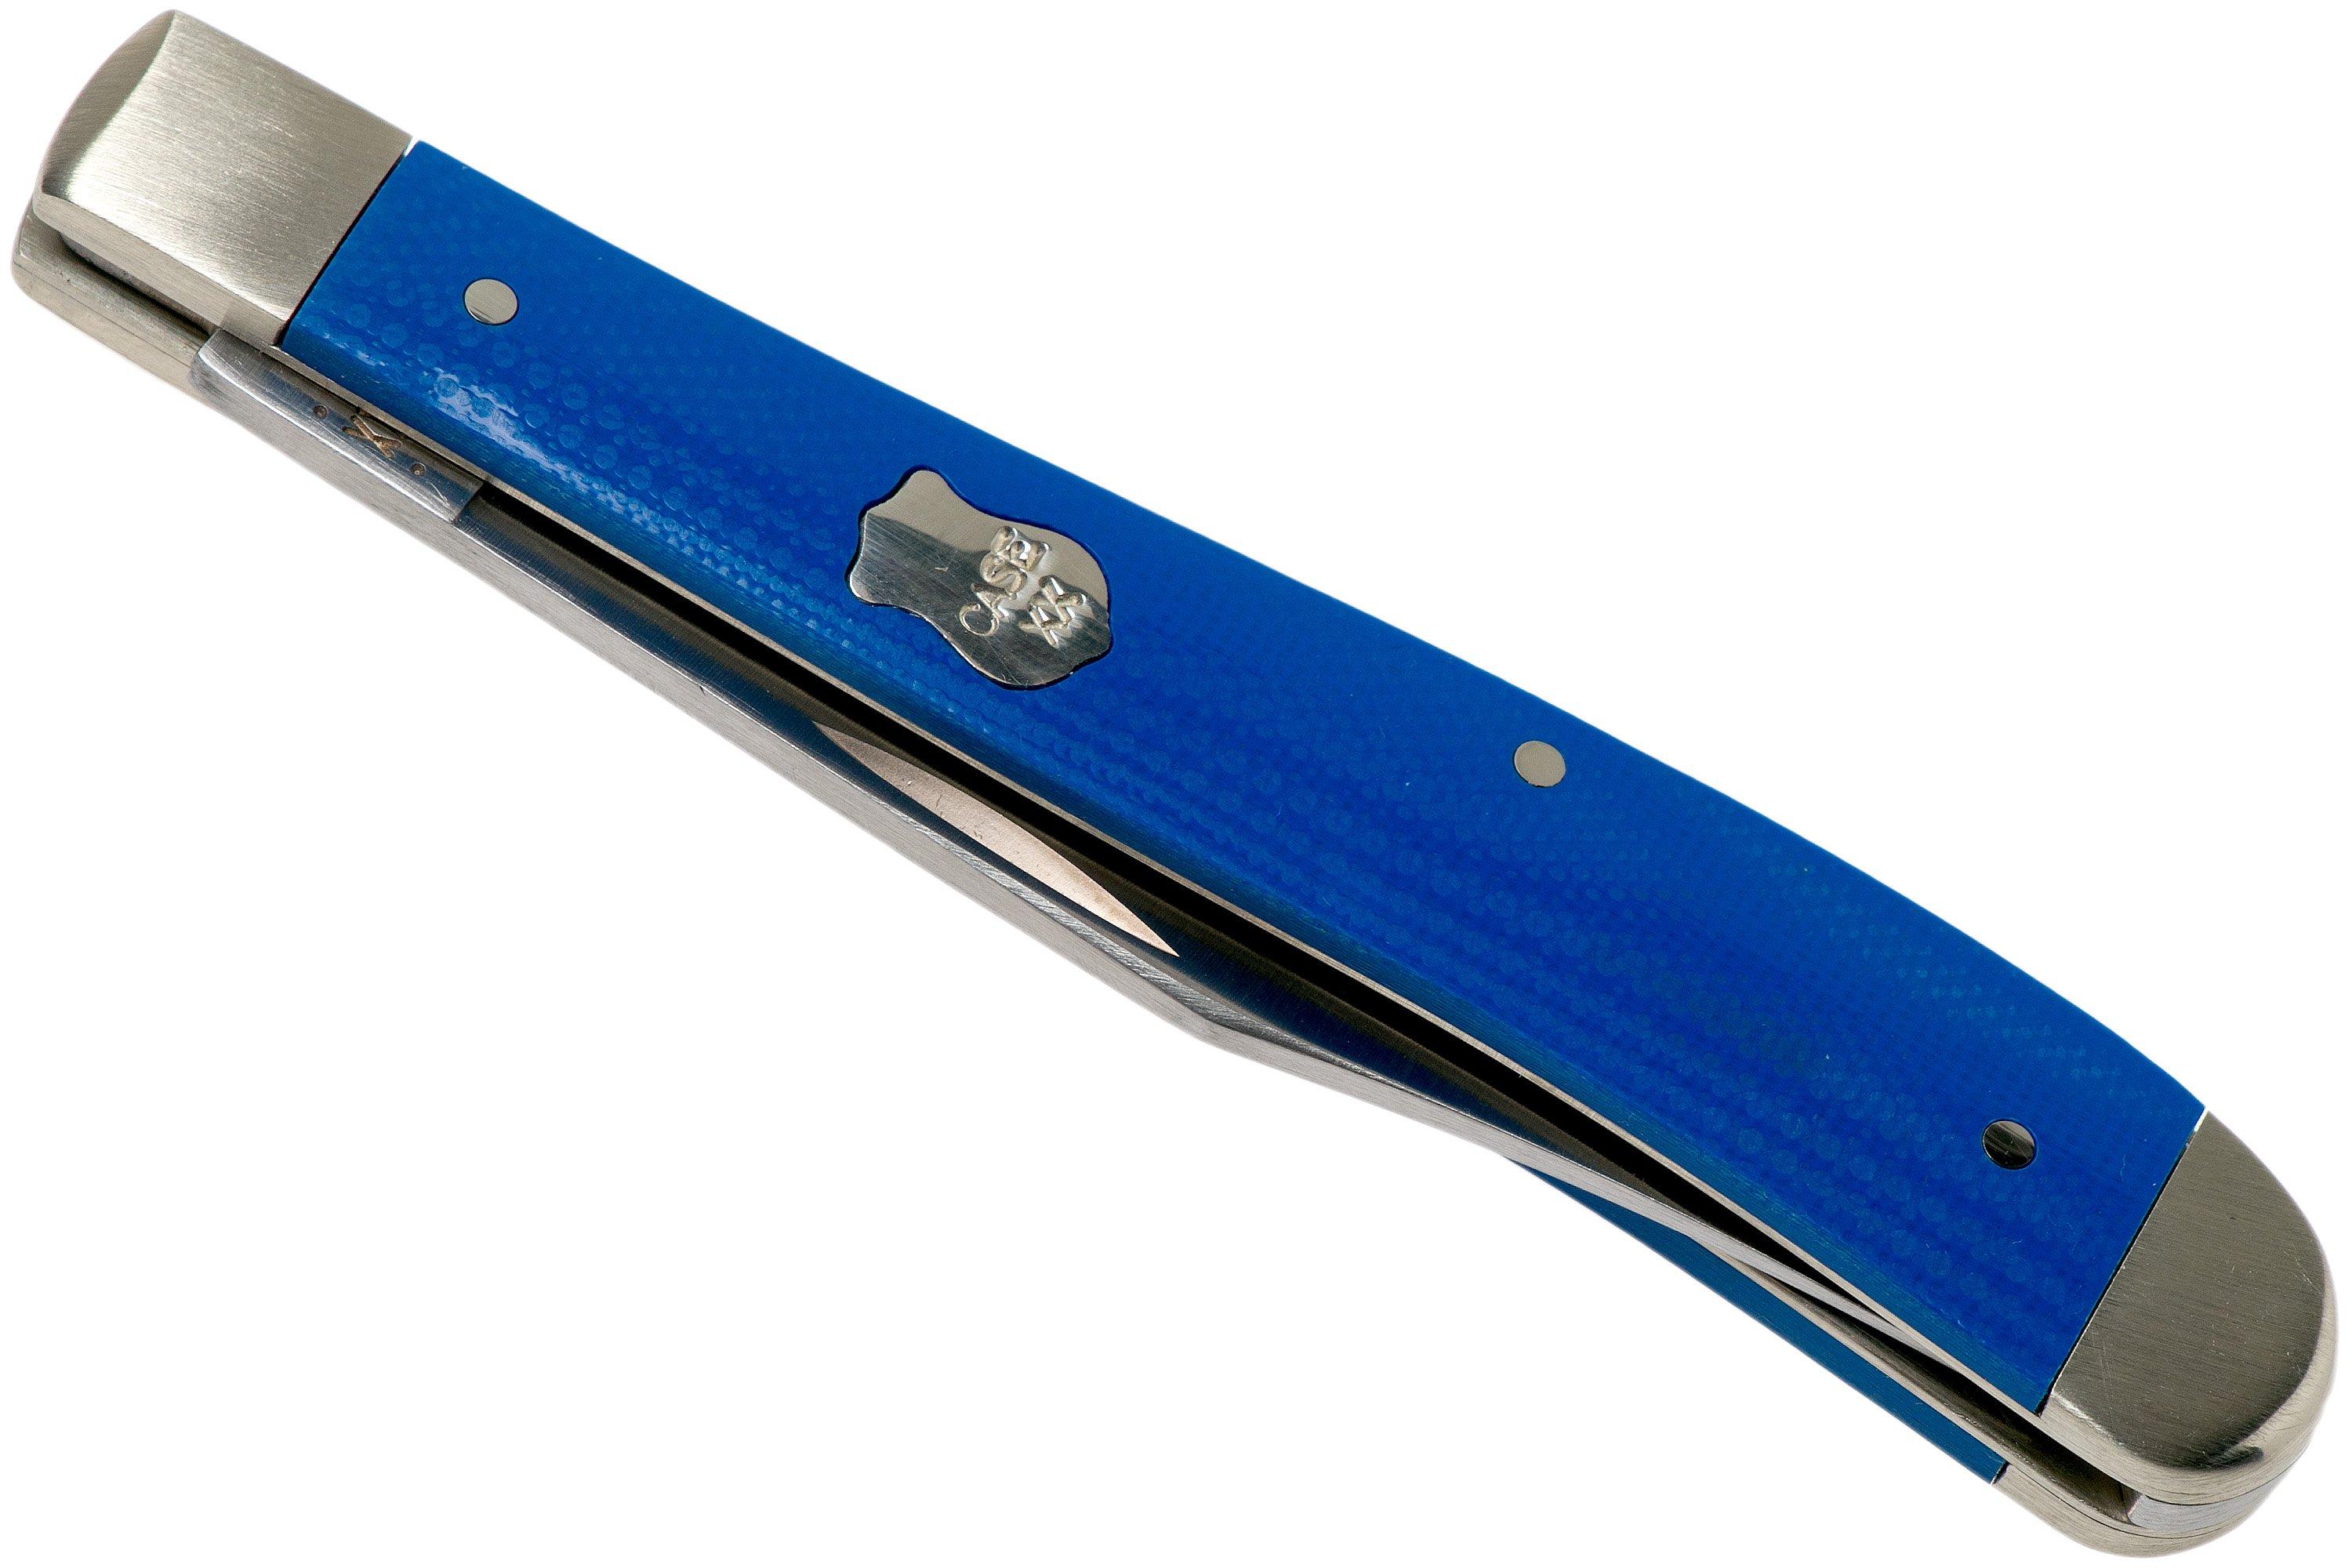 Case Slimline Trapper Blue G10 Smooth, 16746, 101048 SS pocket knife ...